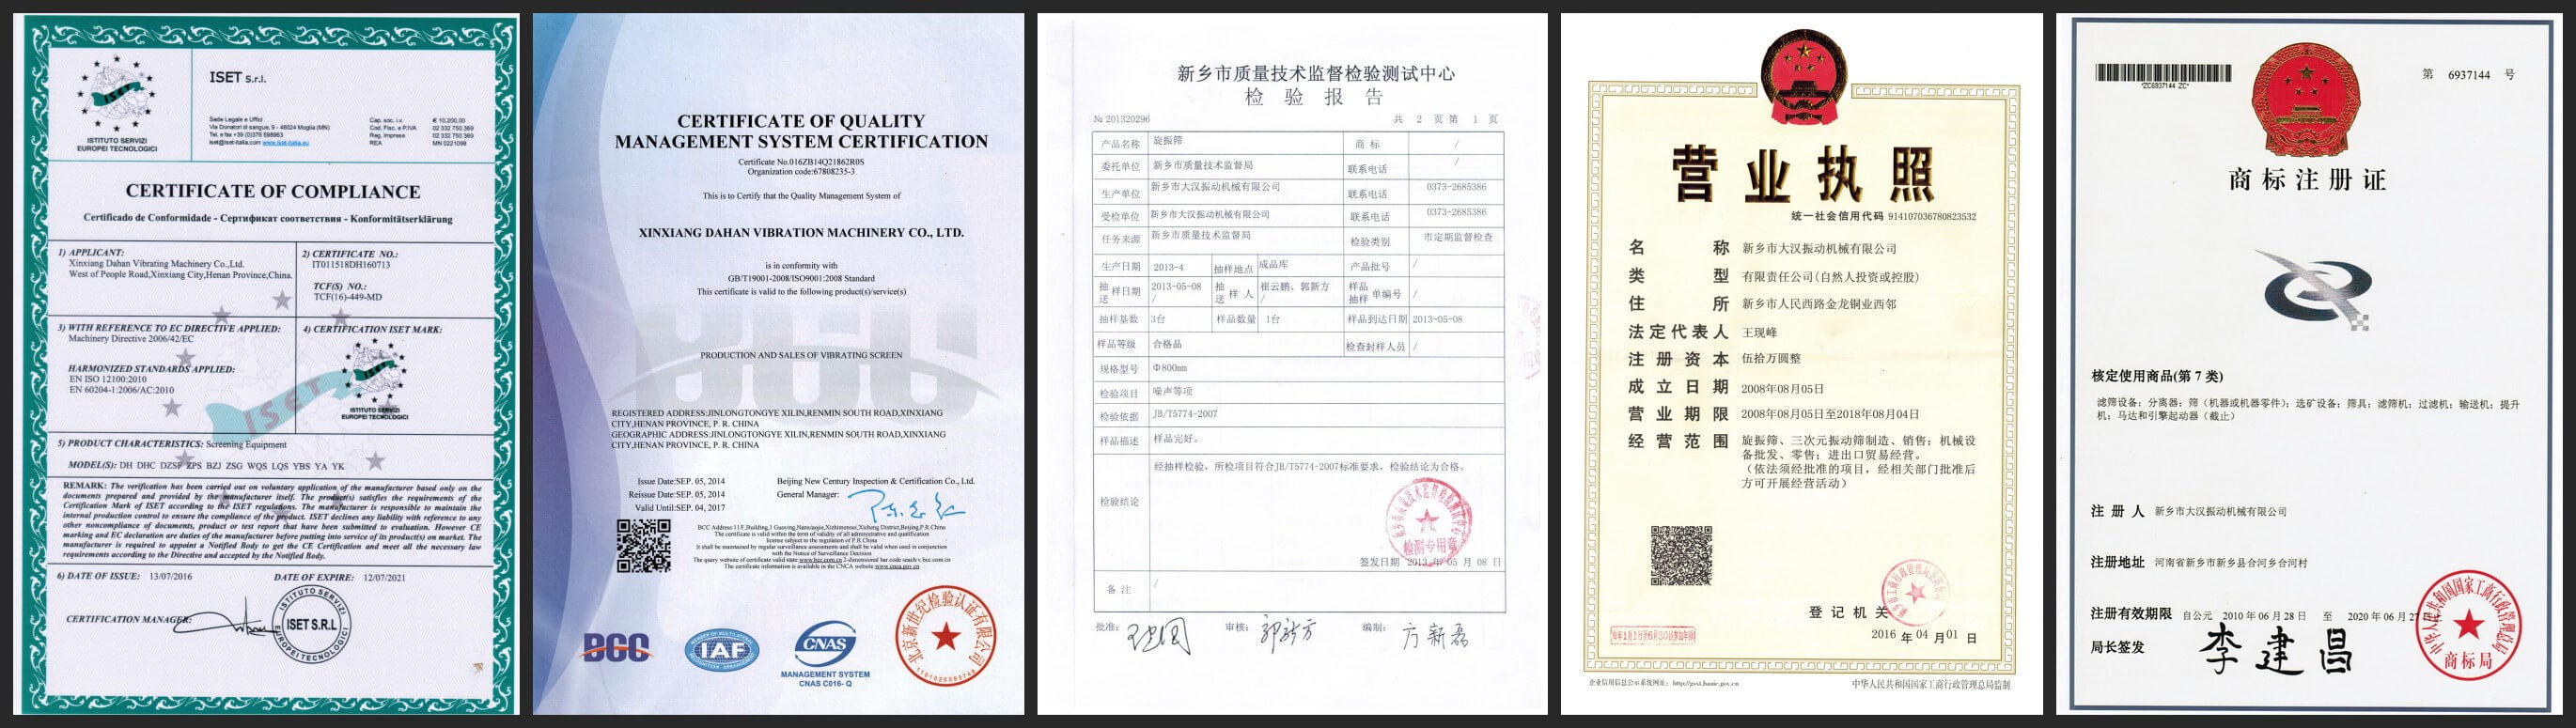 Certification of sieve machine